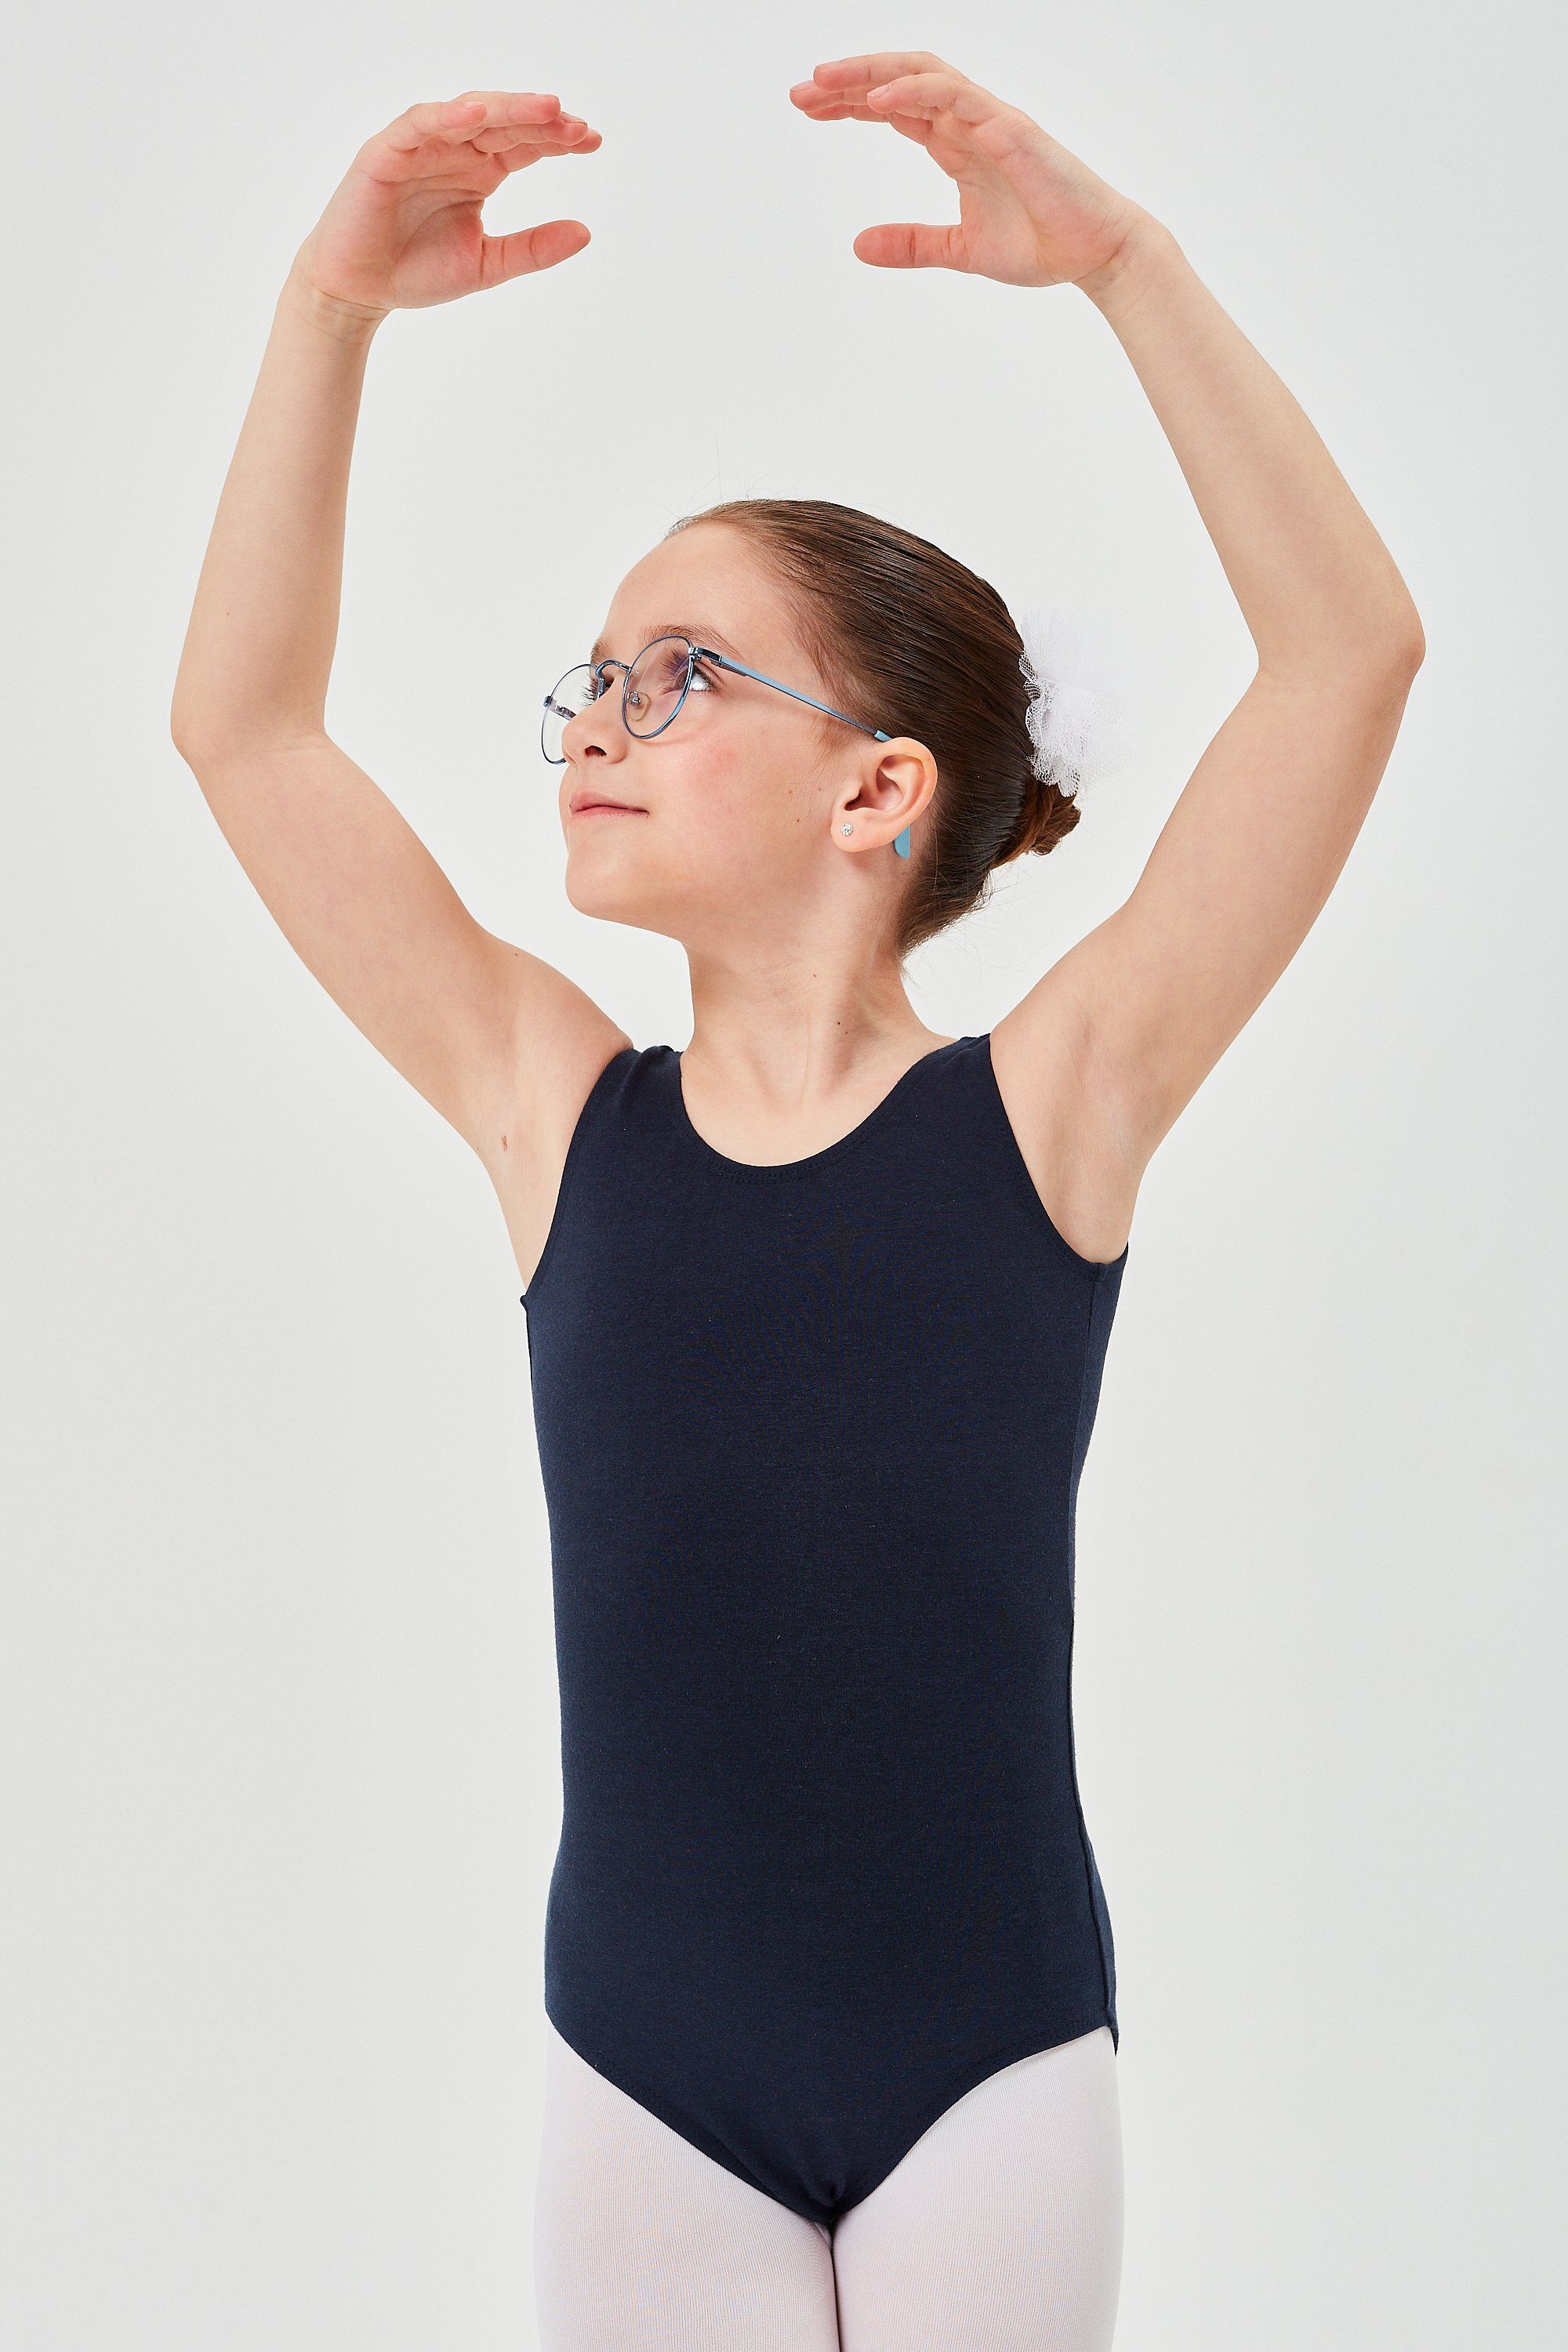 fürs Body Kinder tanzmuster aus Lissy Ballett Baumwolle marineblau Ballettbody ärmelloses weicher Trikot